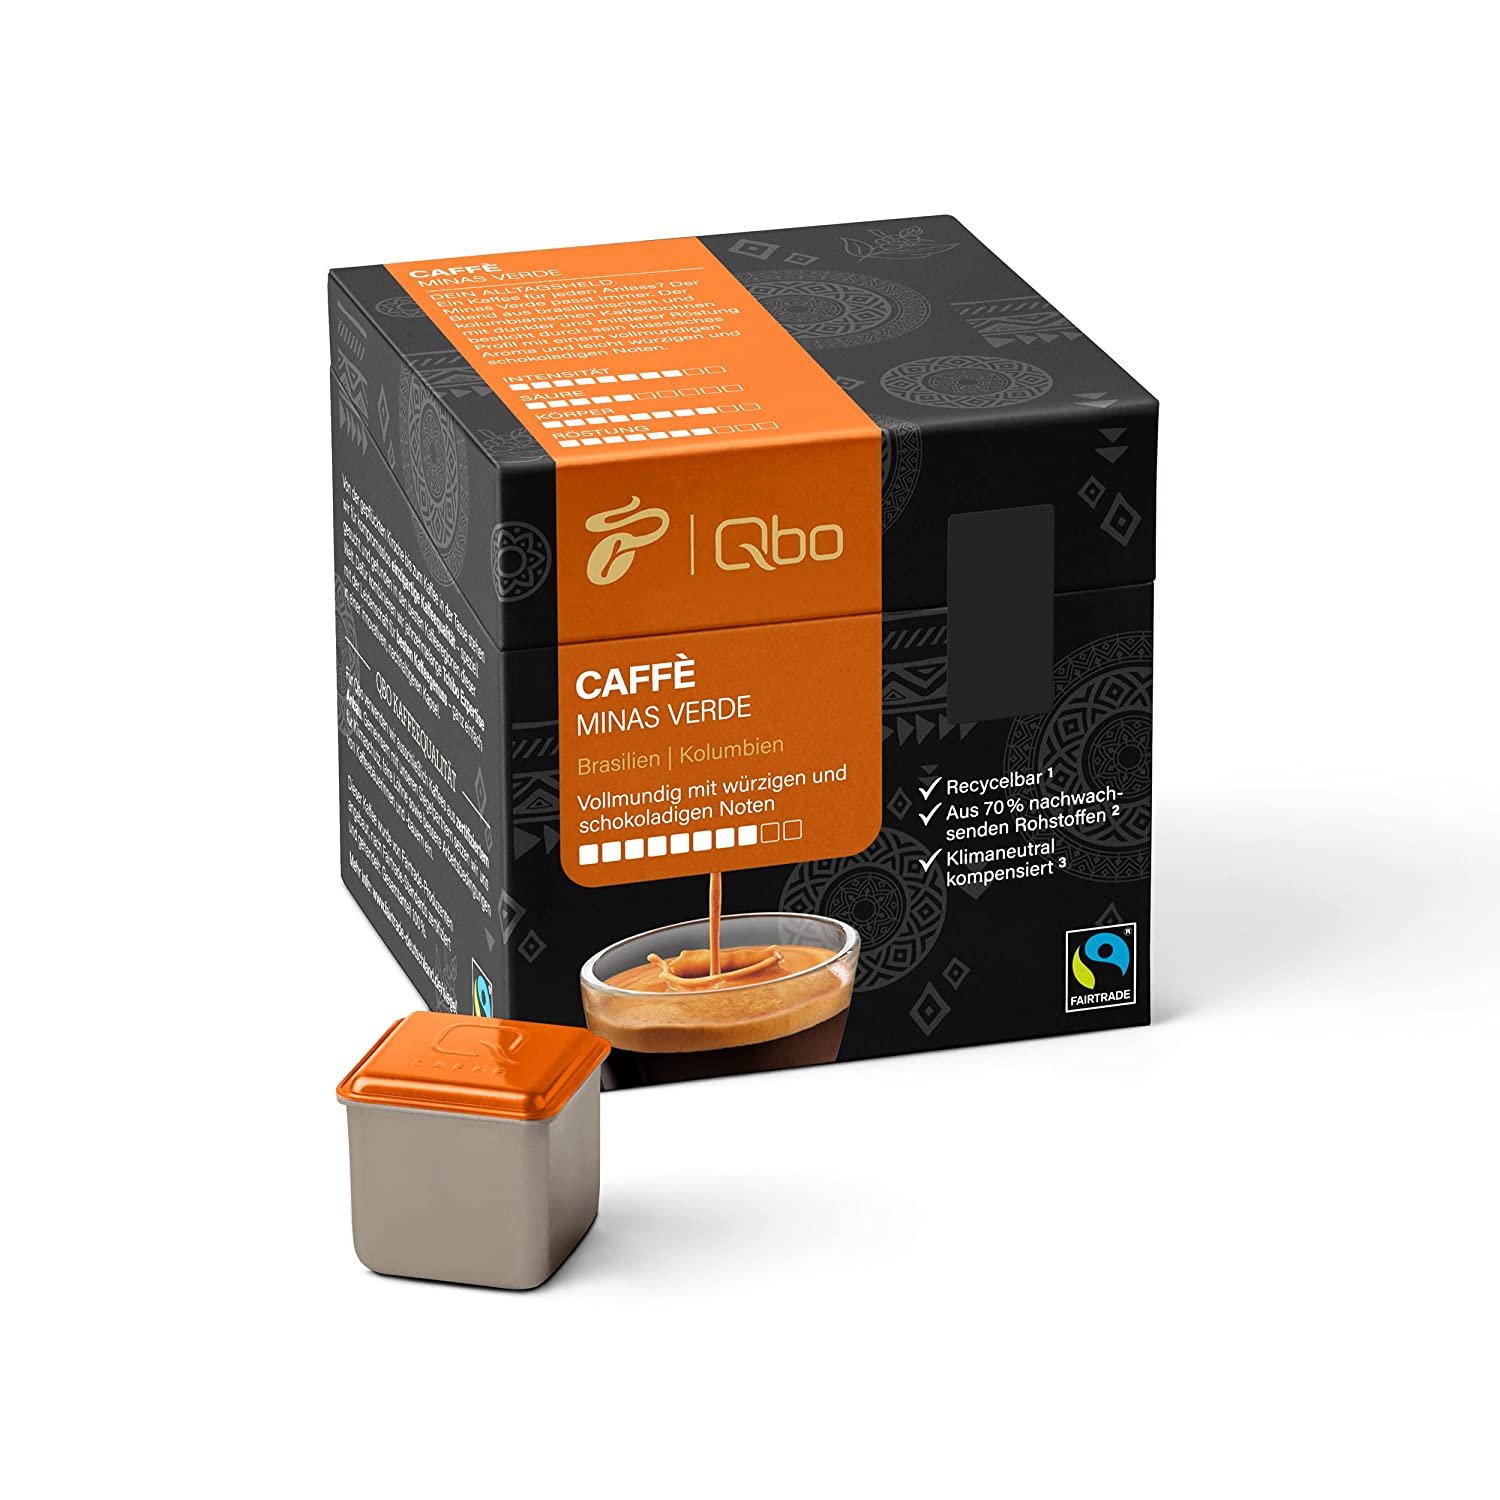 Tchibo Qbo Caffè Minas Verde Premium Kaffeekapseln, 27 Stück (Caffè, Intensität 8/10, vollmundig und würzig), nachhaltig, aus 70% nachwachsenden Rohstoffen & klimaneutral kompensiert